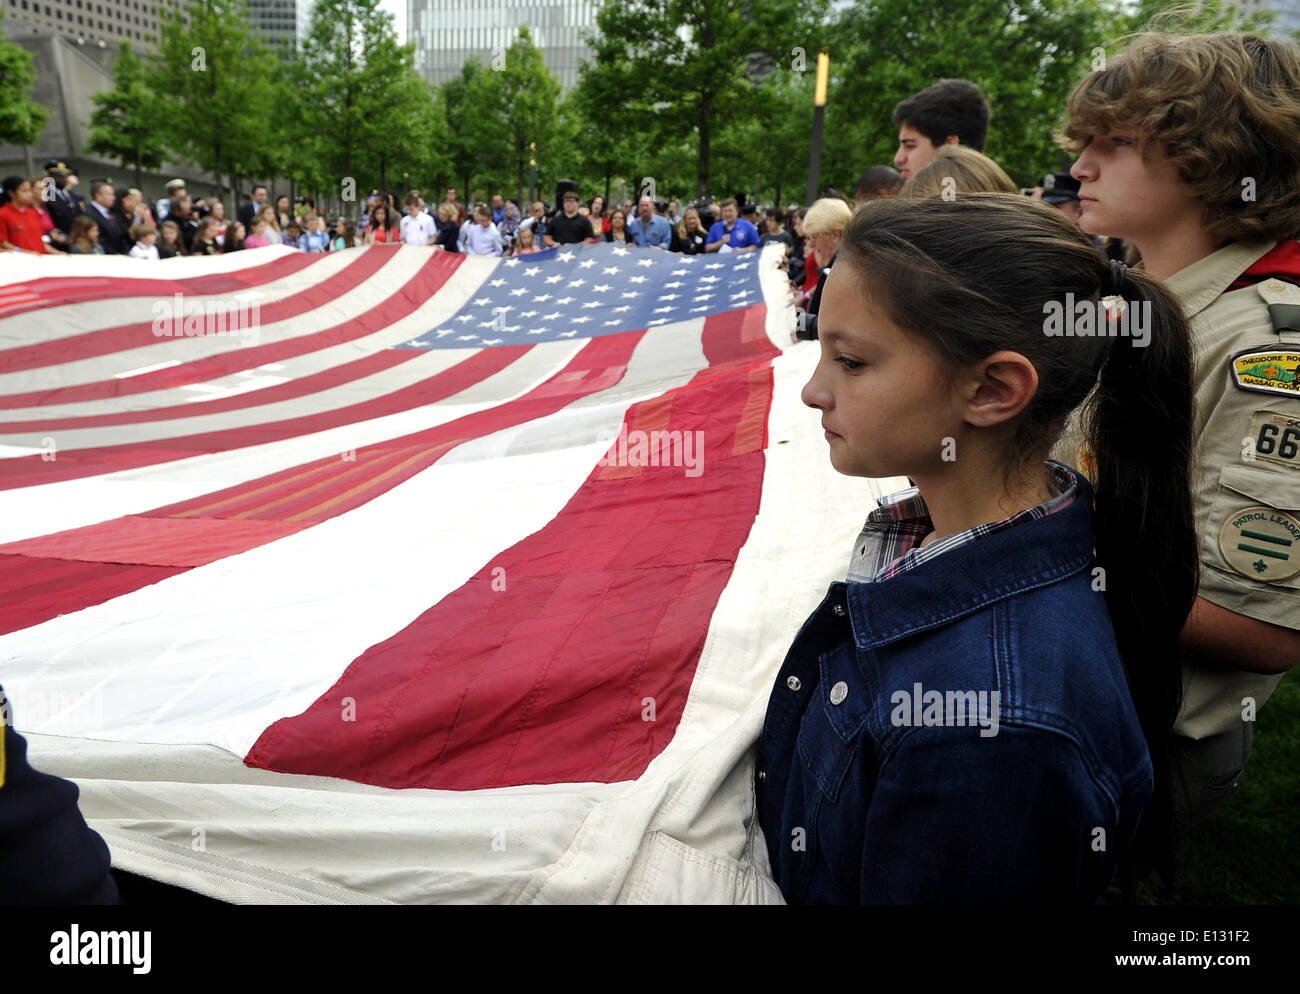 Nueva York, Estados Unidos. 21 de mayo de 2014. Los niños tienen la Bandera Nacional de 9/11 en frente del Museo Nacional conmemorativo del 11 de septiembre en Nueva York, Estados Unidos, 21 de mayo de 2014. El museo memorial del miércoles se abrió al público en general después de la ceremonia de traspaso de la Bandera Nacional 11/09, una bandera americana que había volado en 90 West Street, adyacente a la Zona Cero, durante semanas después de los atentados, en la colección permanente del museo. Crédito: Wang Lei/Xinhua/Alamy Live News Foto de stock